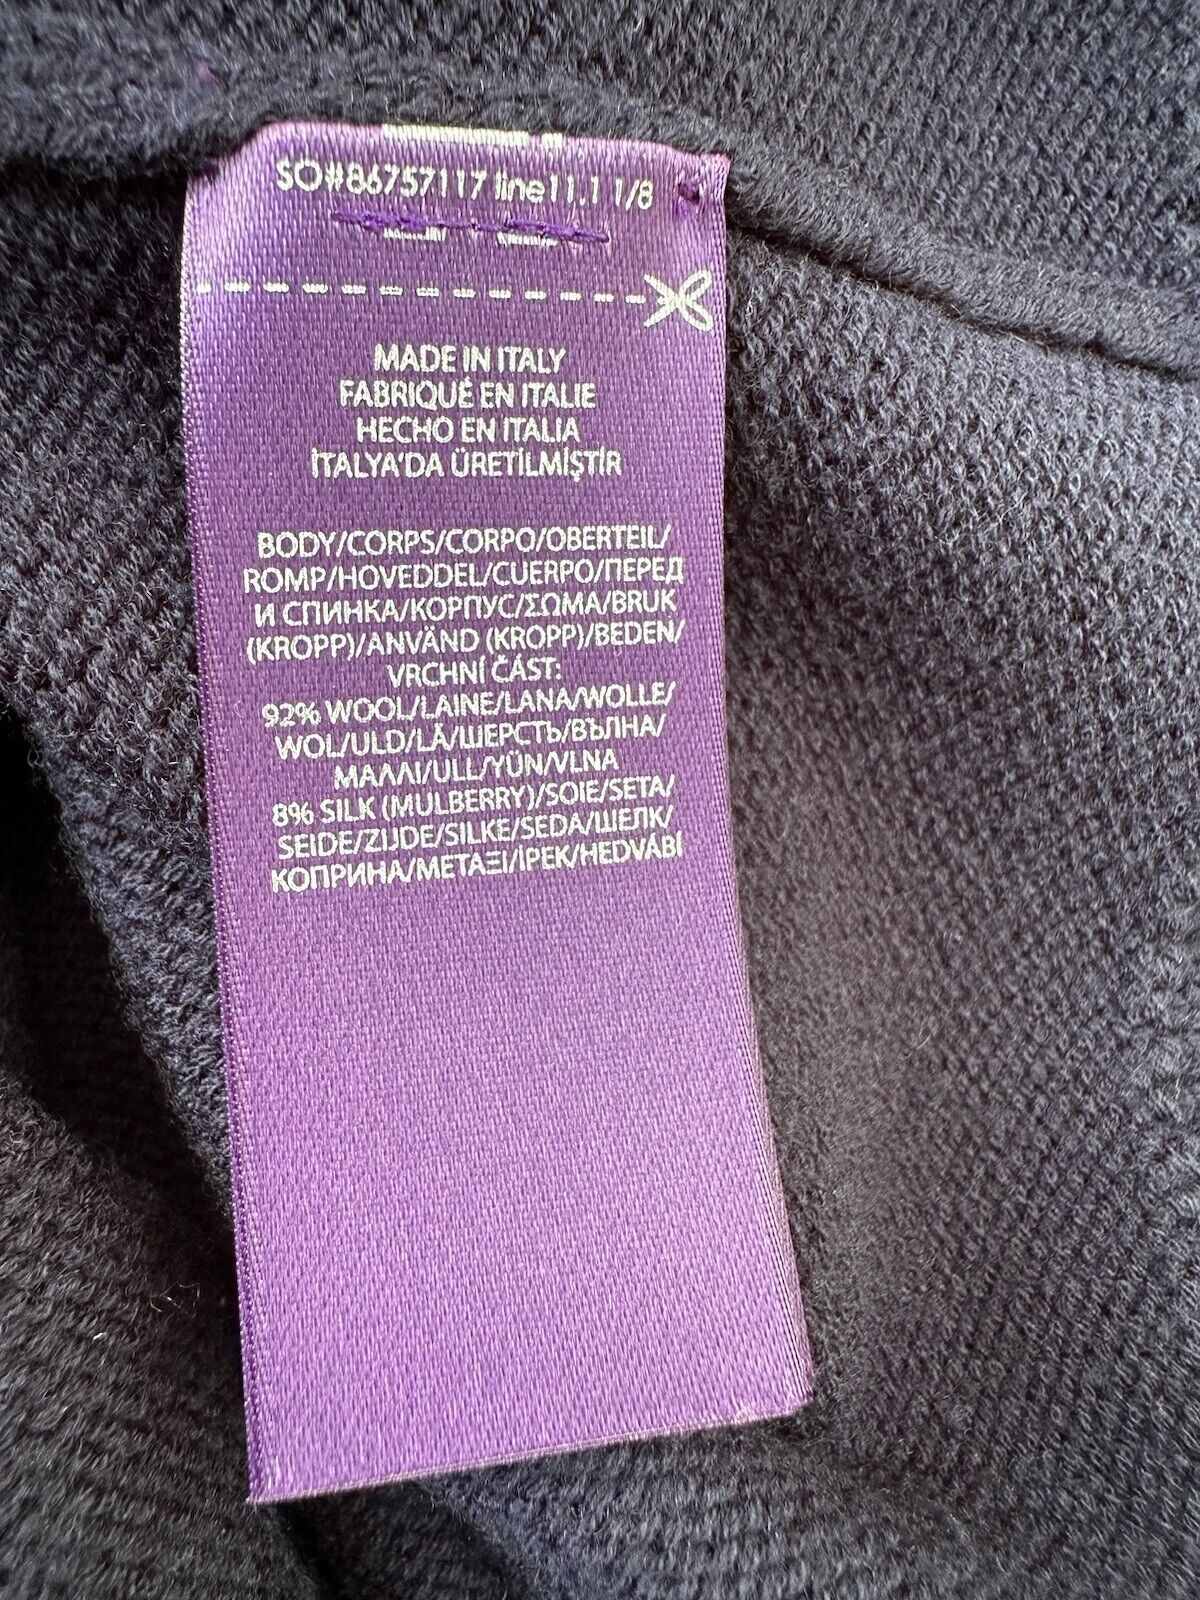 Polo Ralph Lauren Purple Label Women's Wool/Silk Knit Sweater M Italy NWT $1290